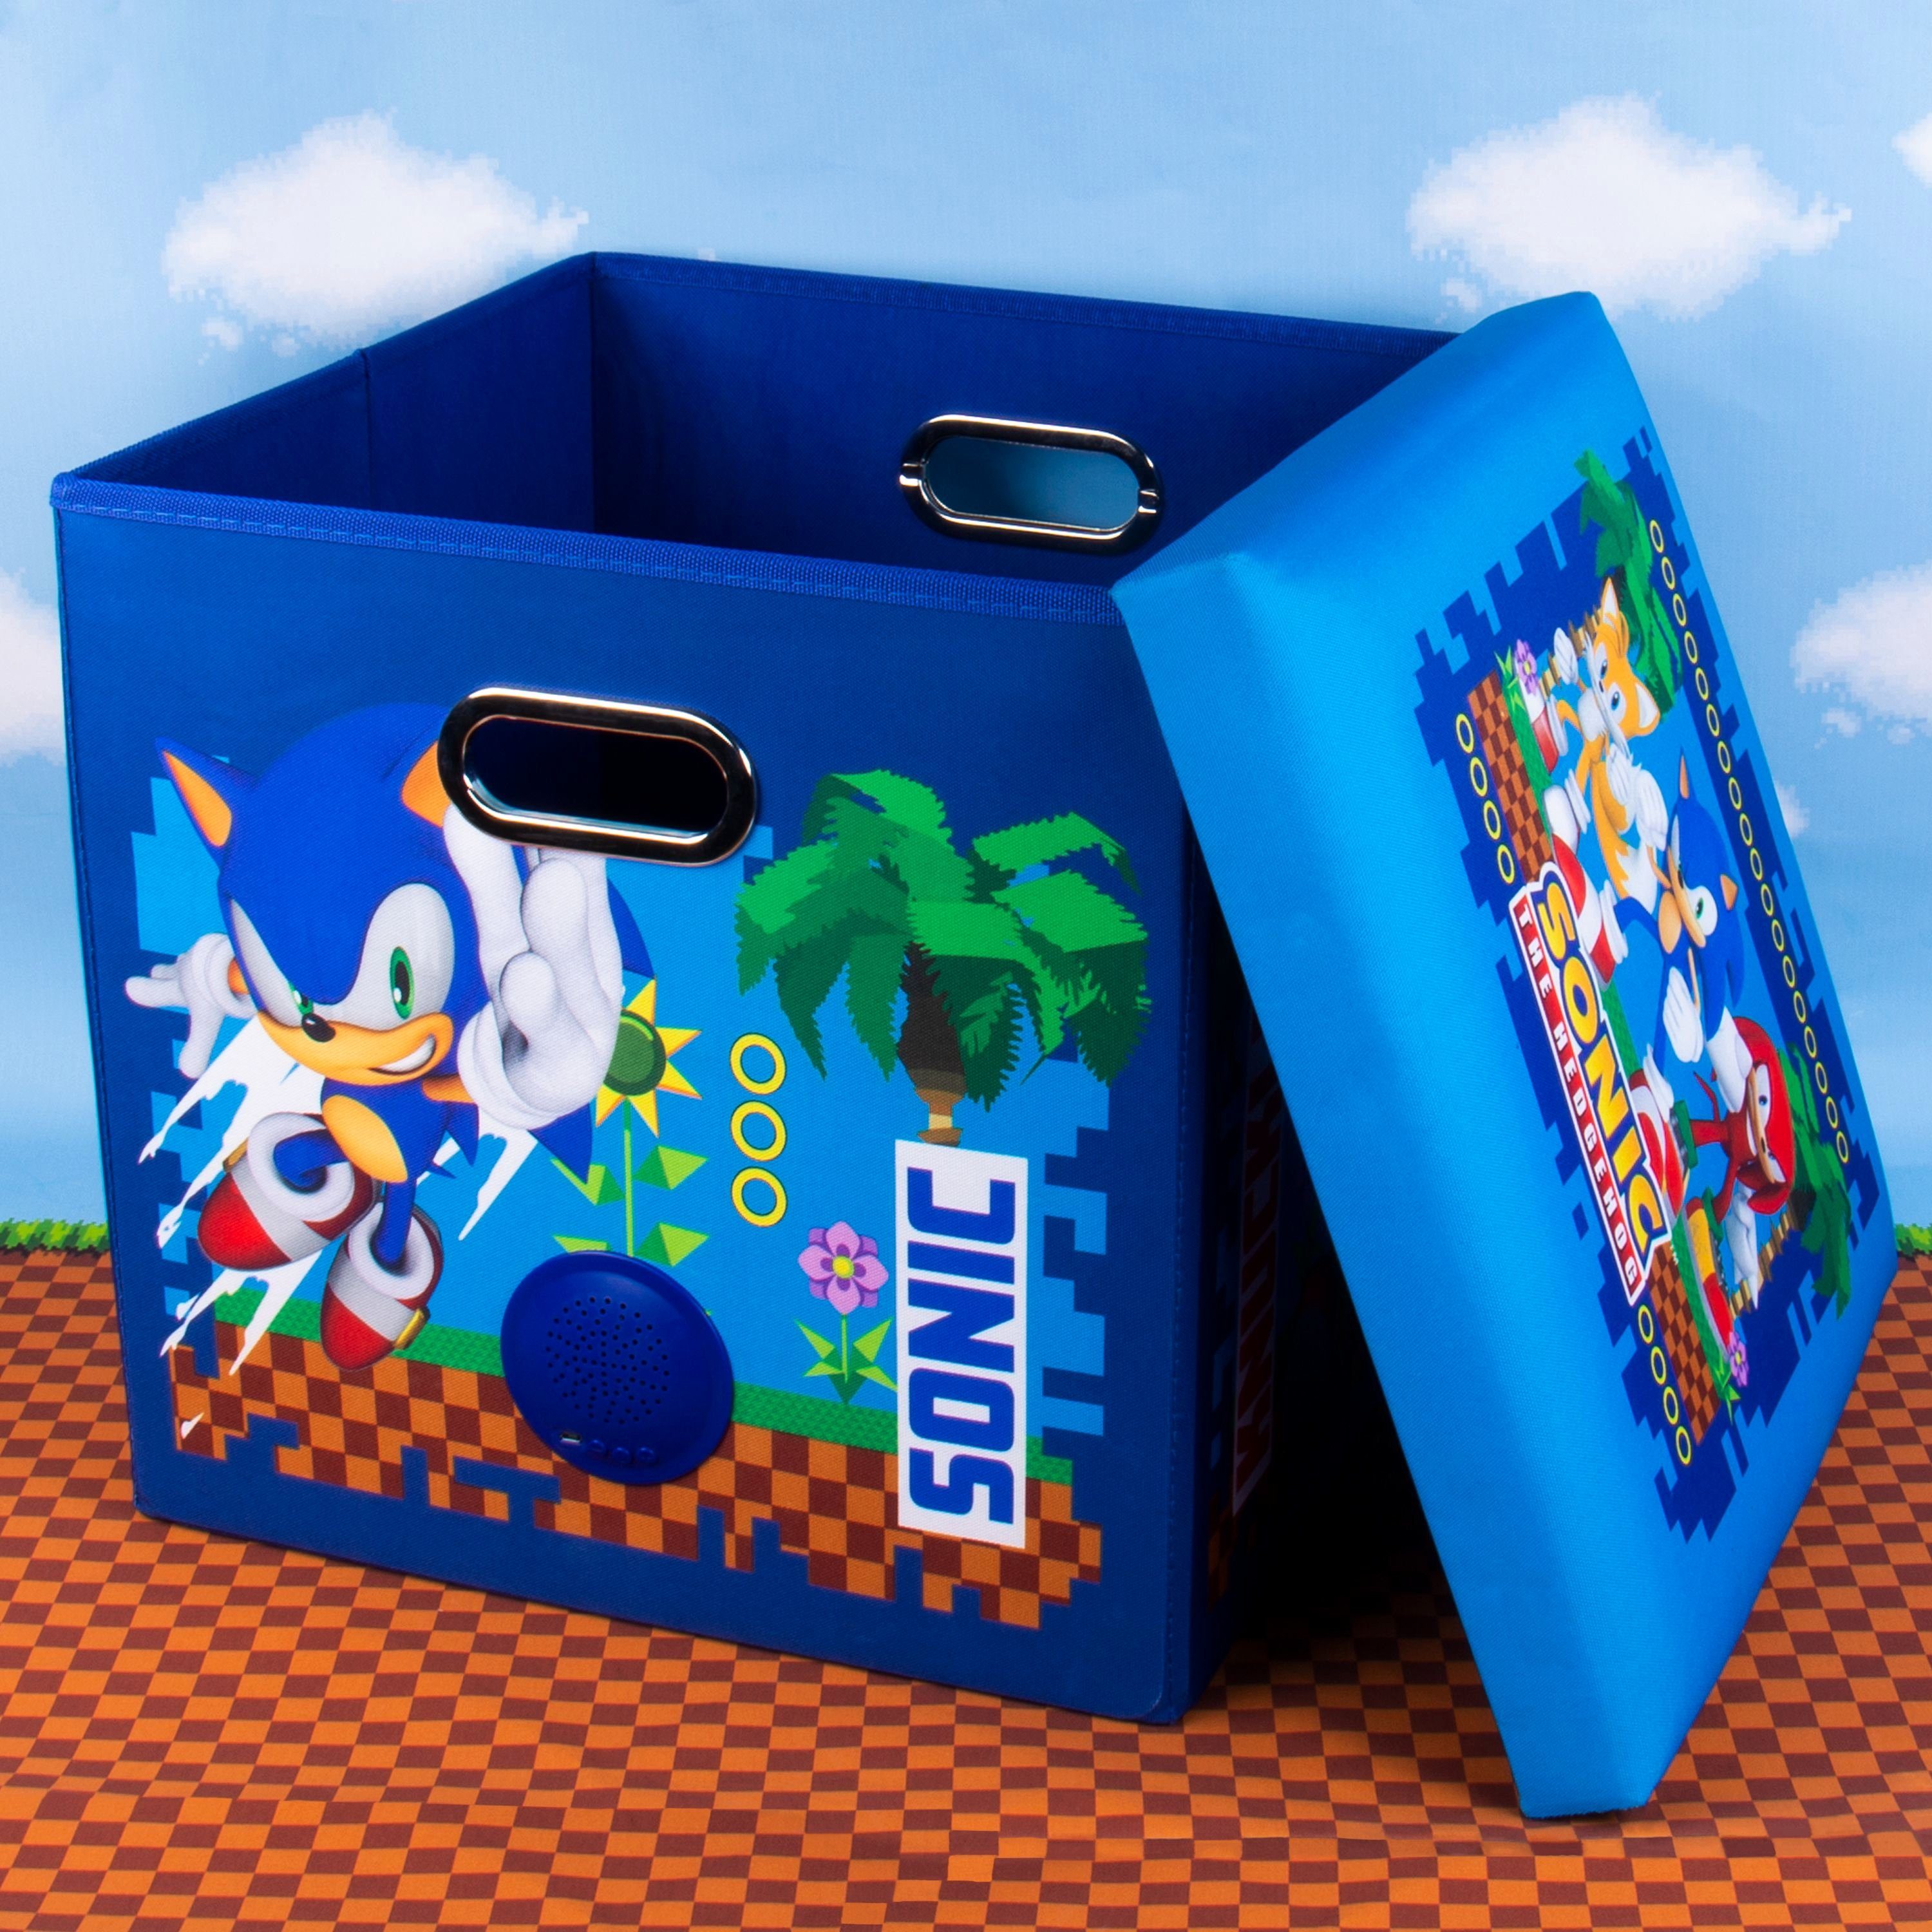 Fizz creations Sonic einem) und the Box Aufbewahrungsbox Lautsprecher Sound Sitzmöglichkeit 3in1 Wireless in (Lautsprecher, Hedgehog